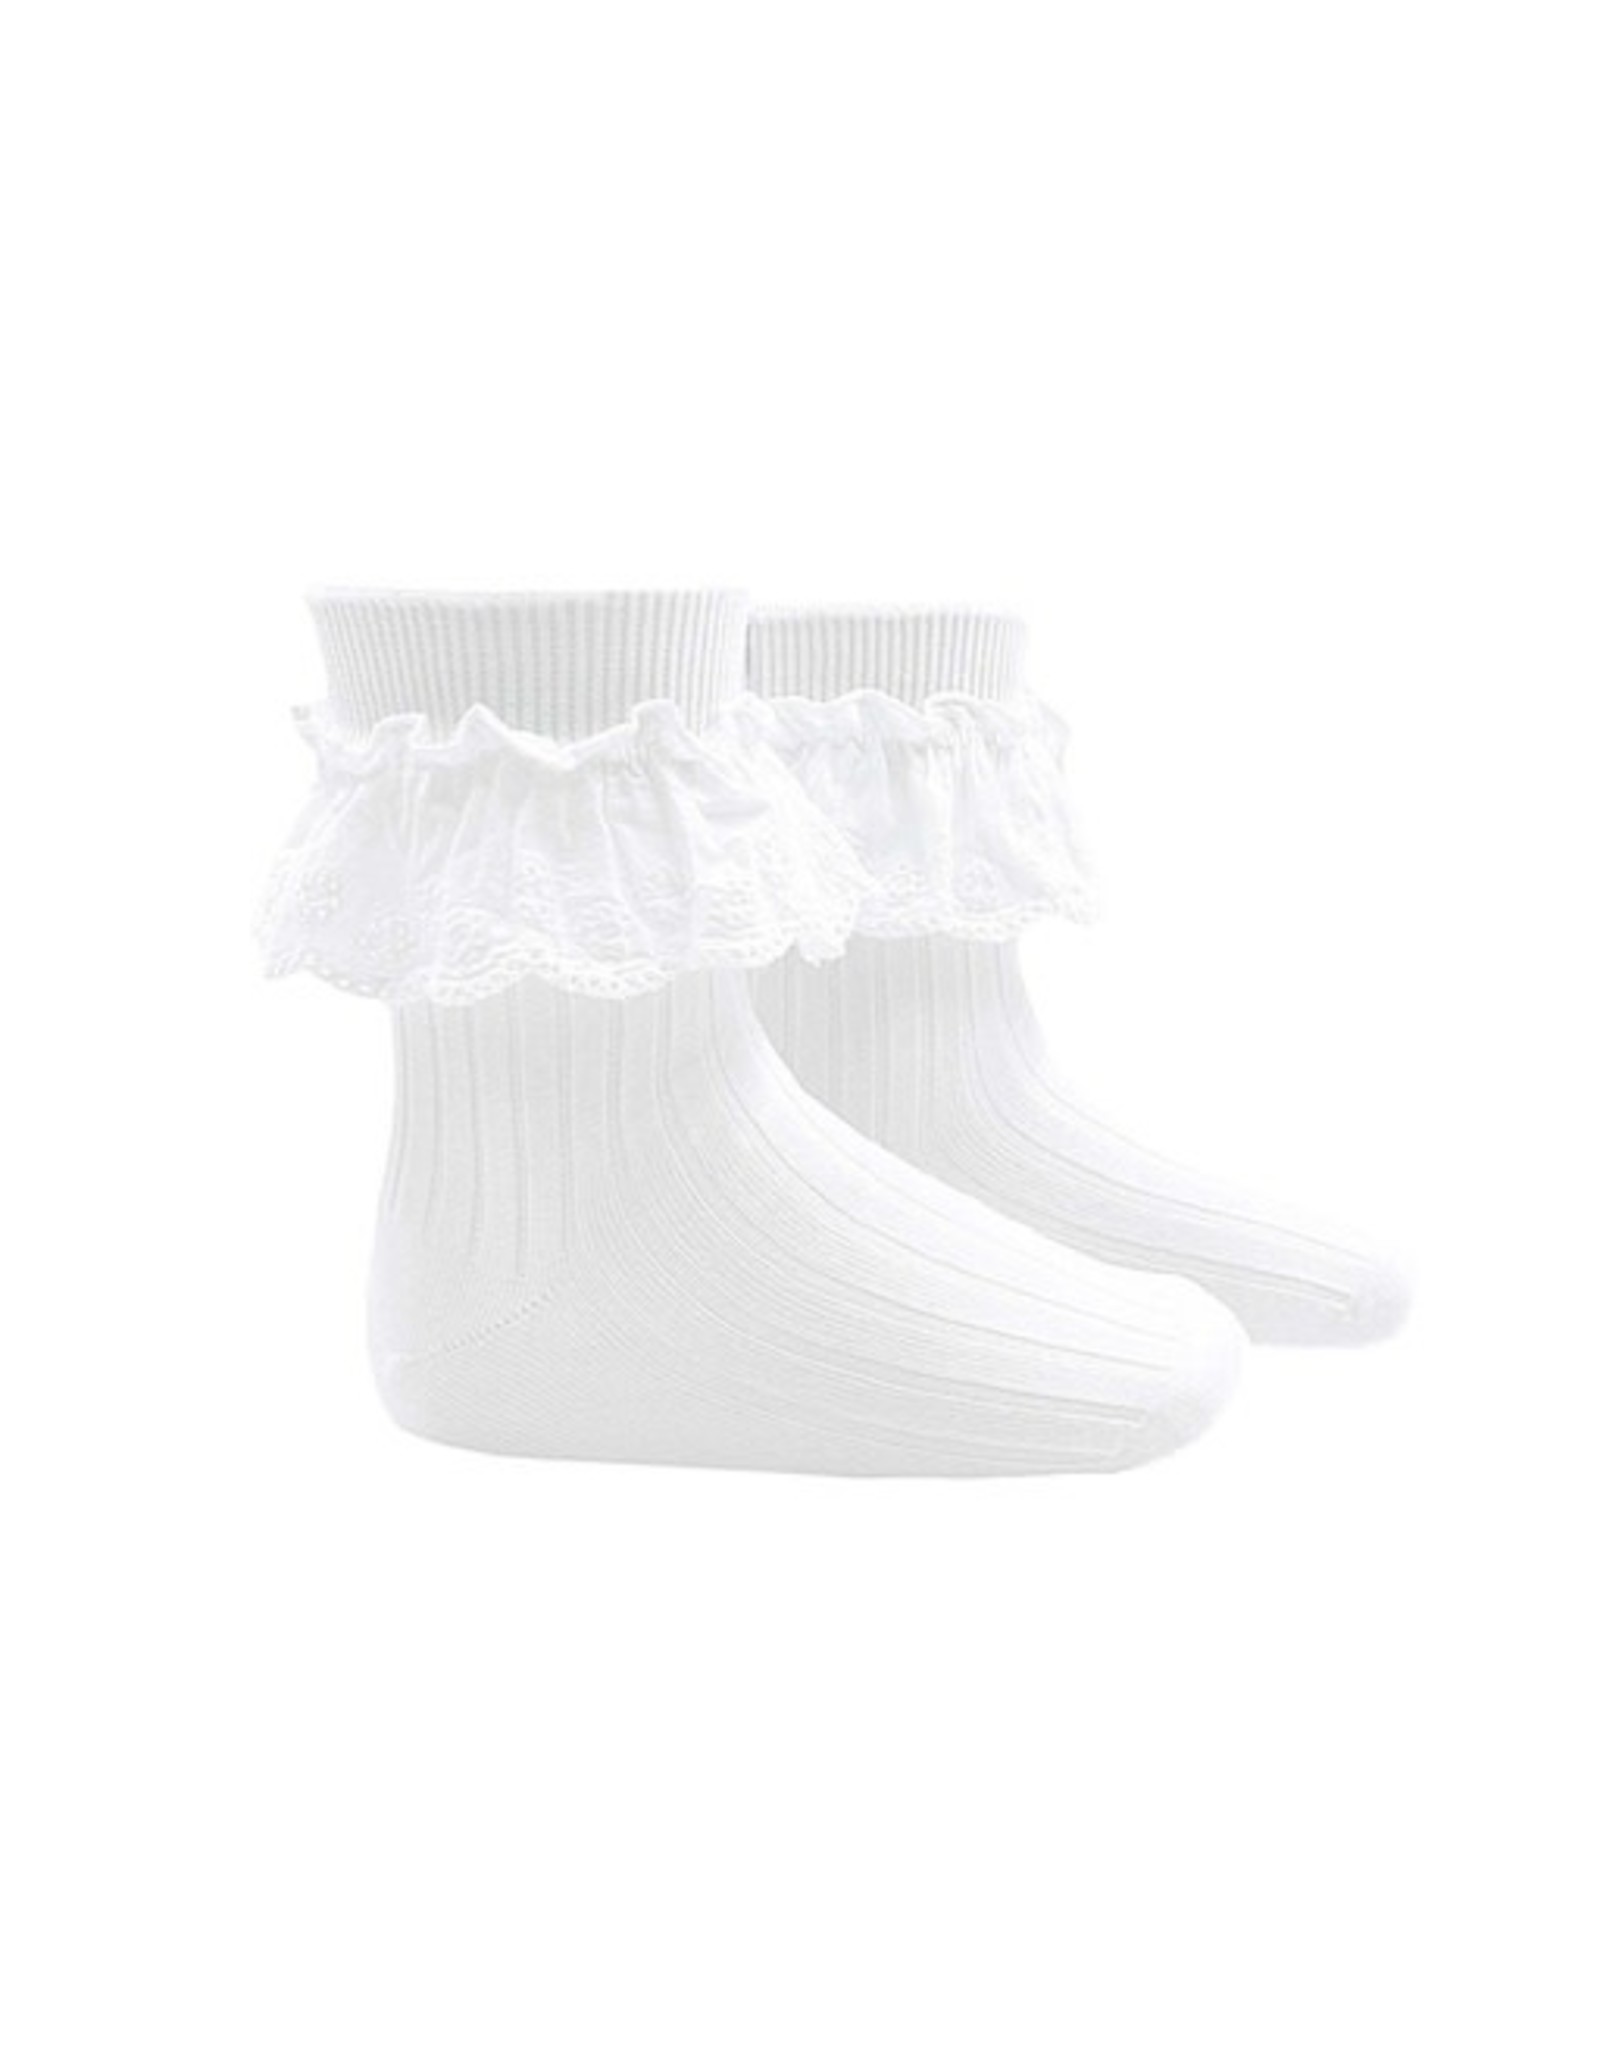 CONDOR White Embroidered Batiste Short Socks